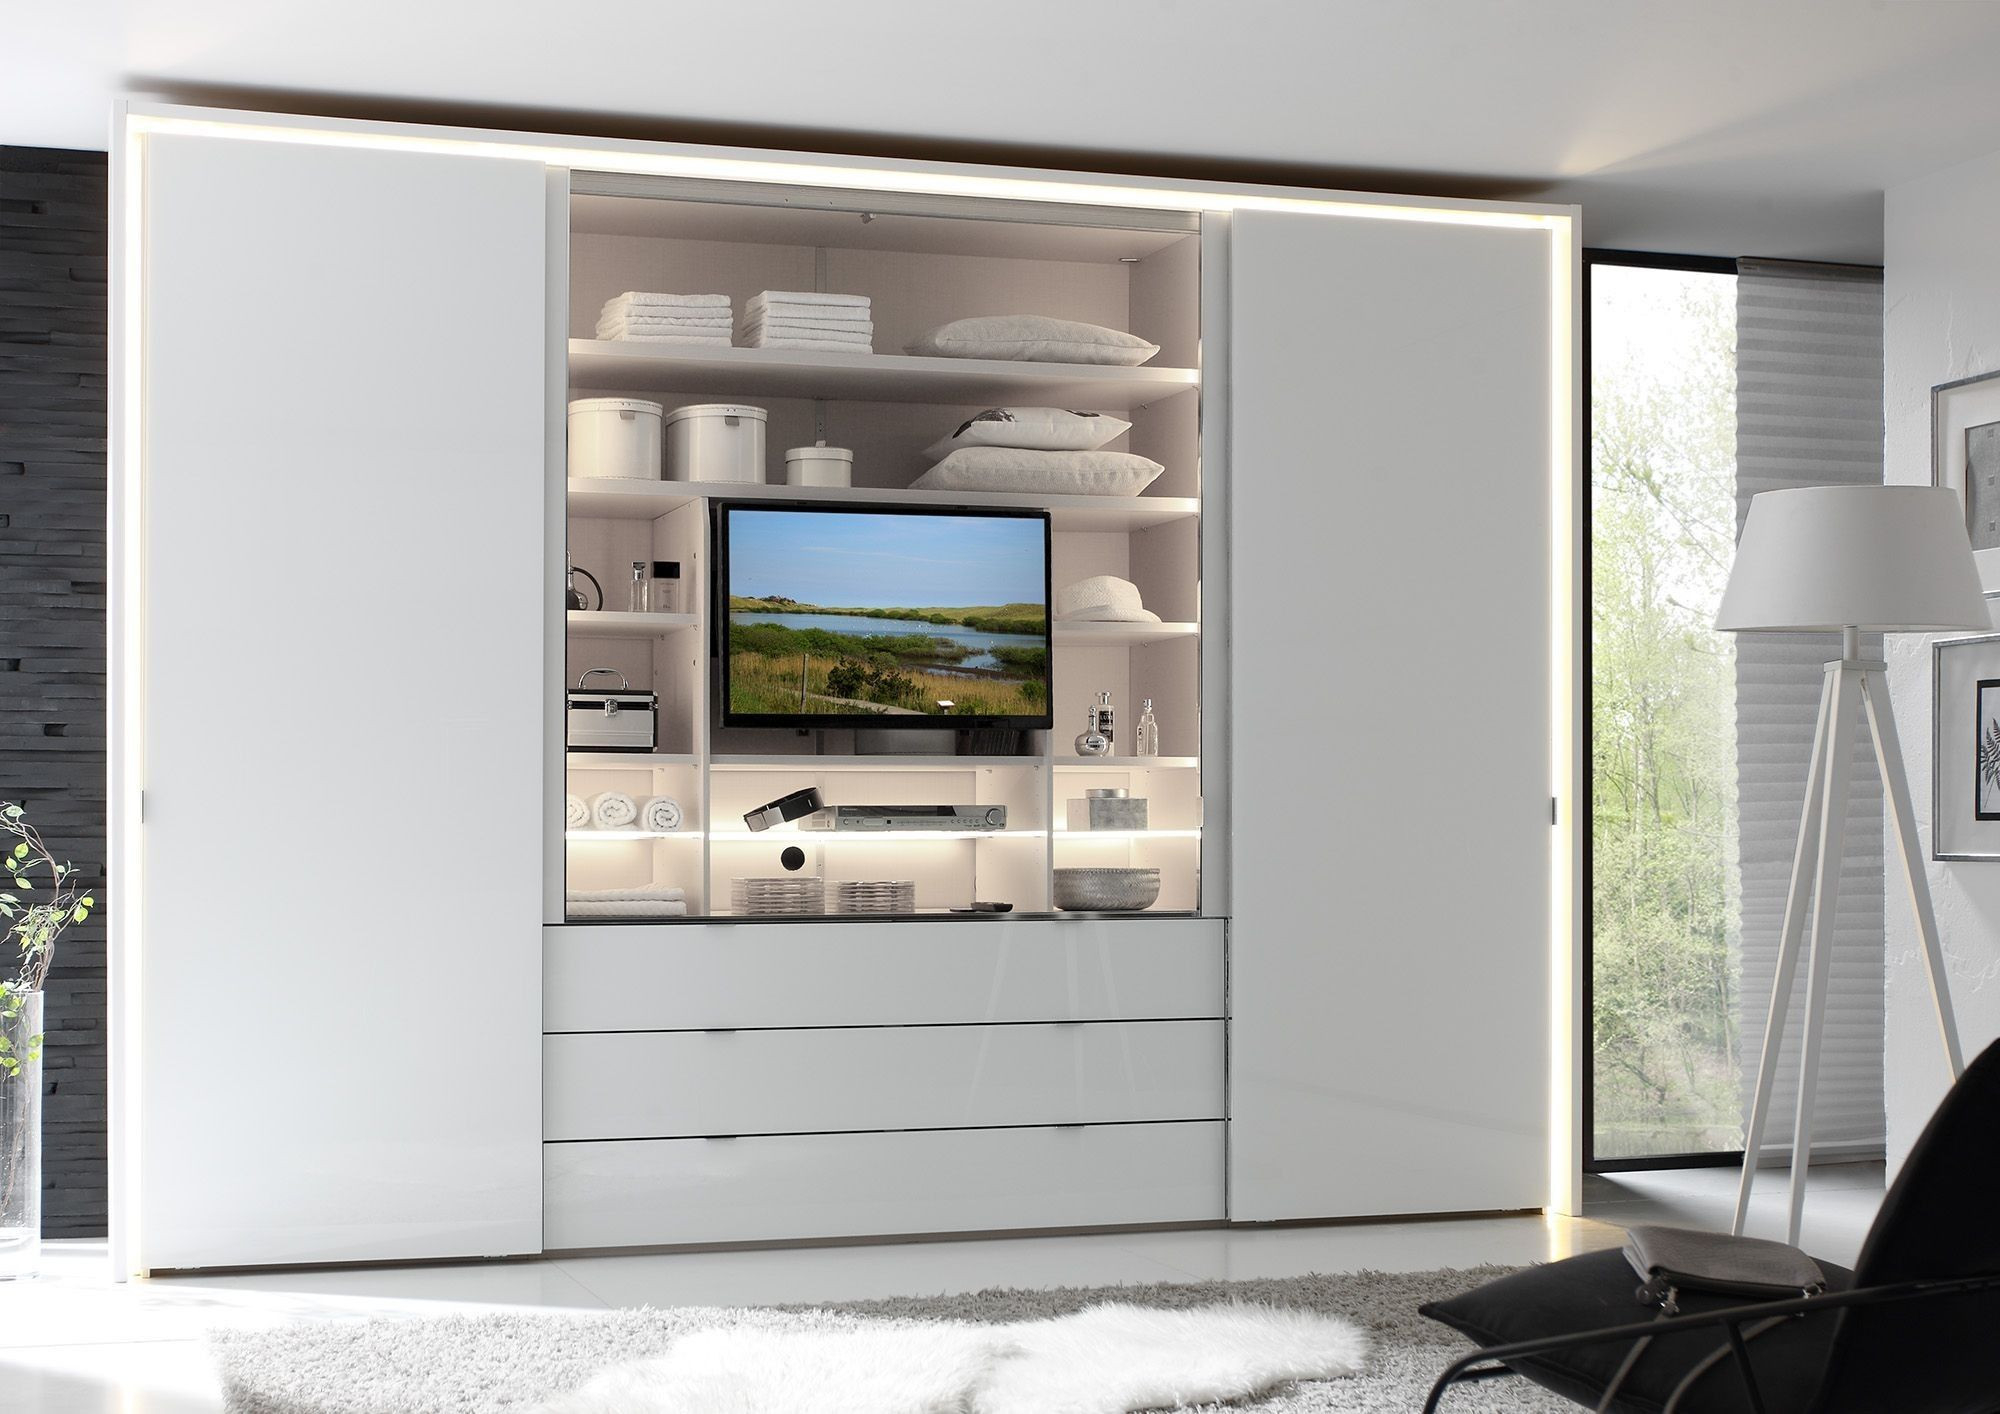 Kleiderschrank Mit Fernsehfach | Home Room Design, Wardrobe Design pertaining to Kleiderschrank Mit Fernsehfach